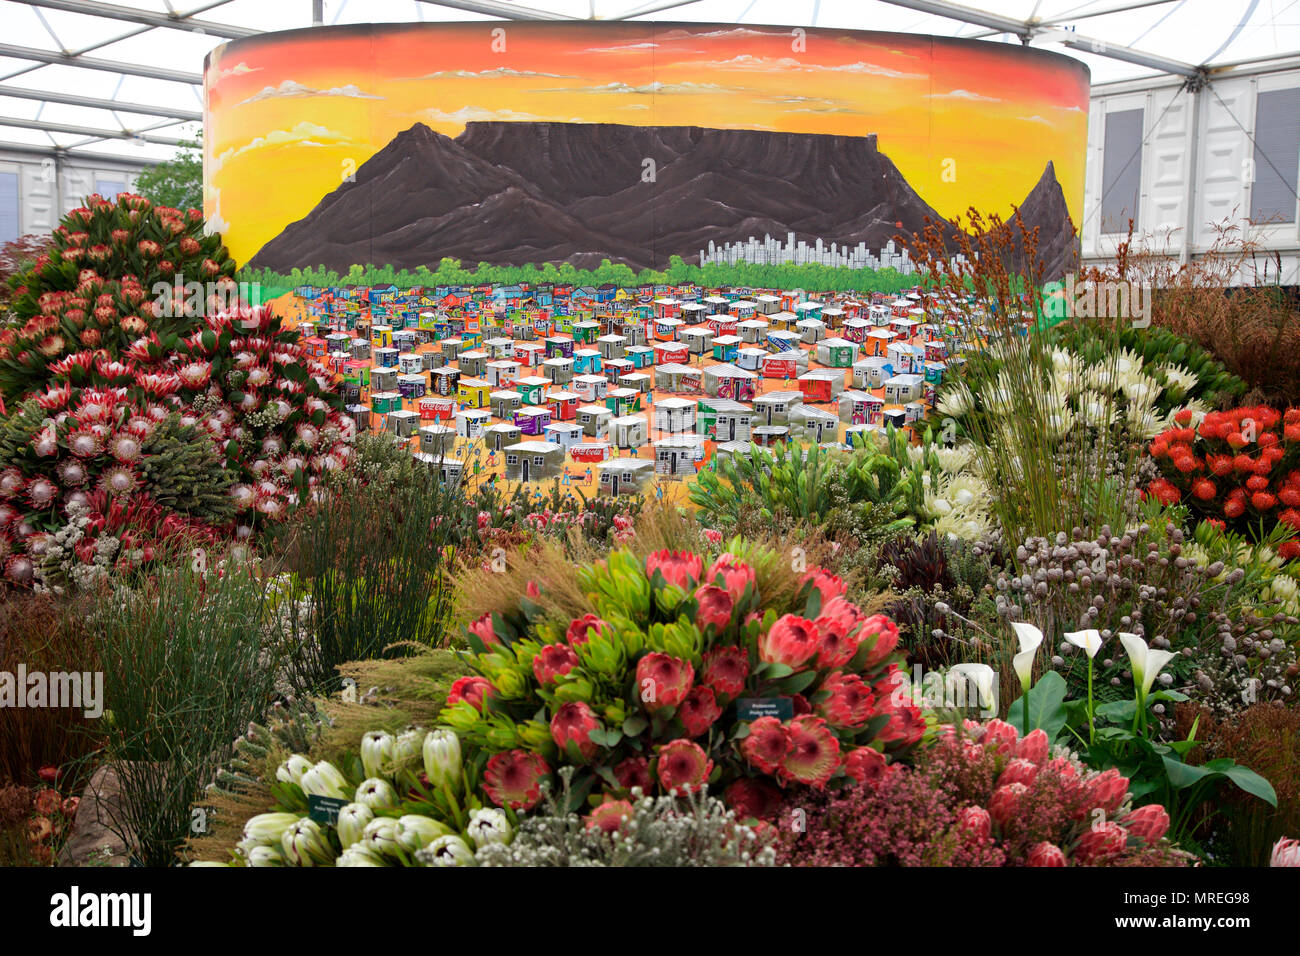 Visualización de Cape Town flora por León Kluge en el Gran Pavision, RHS Chelsea Flower Show 2018 Foto de stock